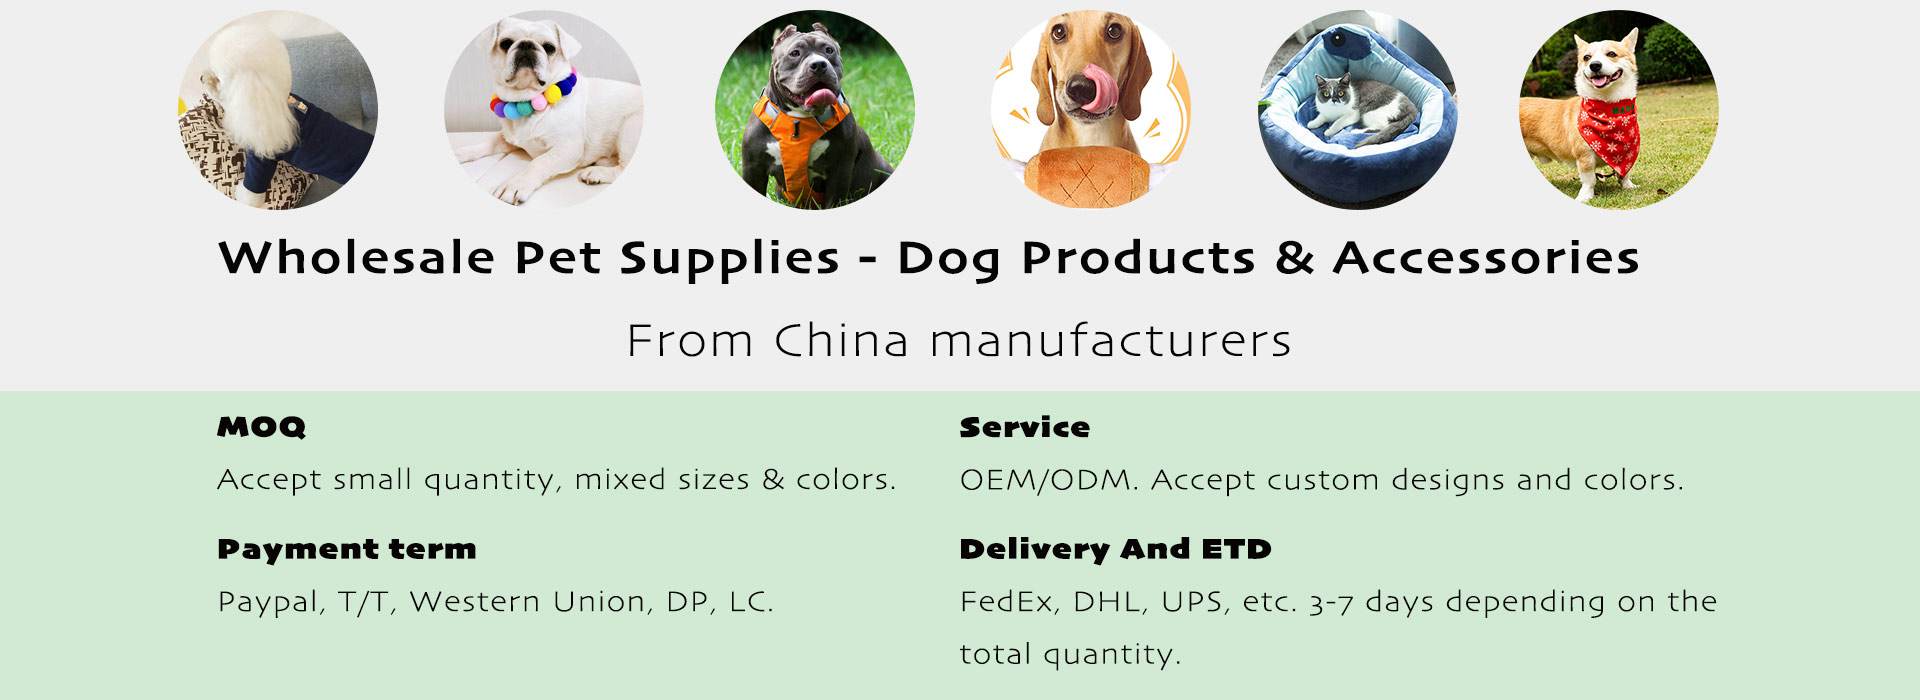 wholesale pet supplies